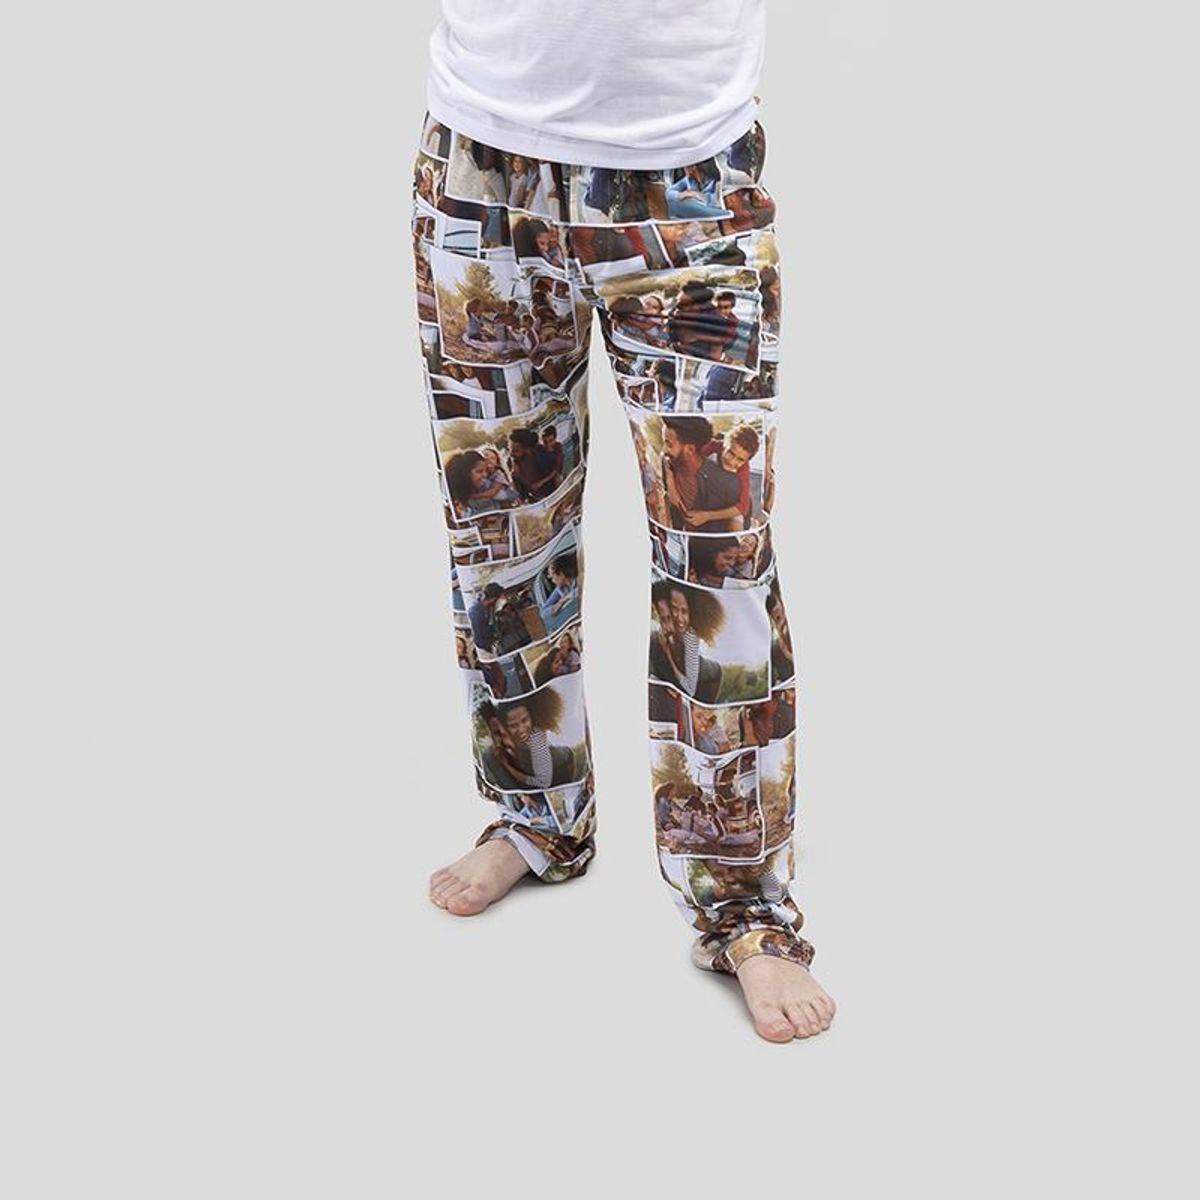 Personalized Men's Pajamas